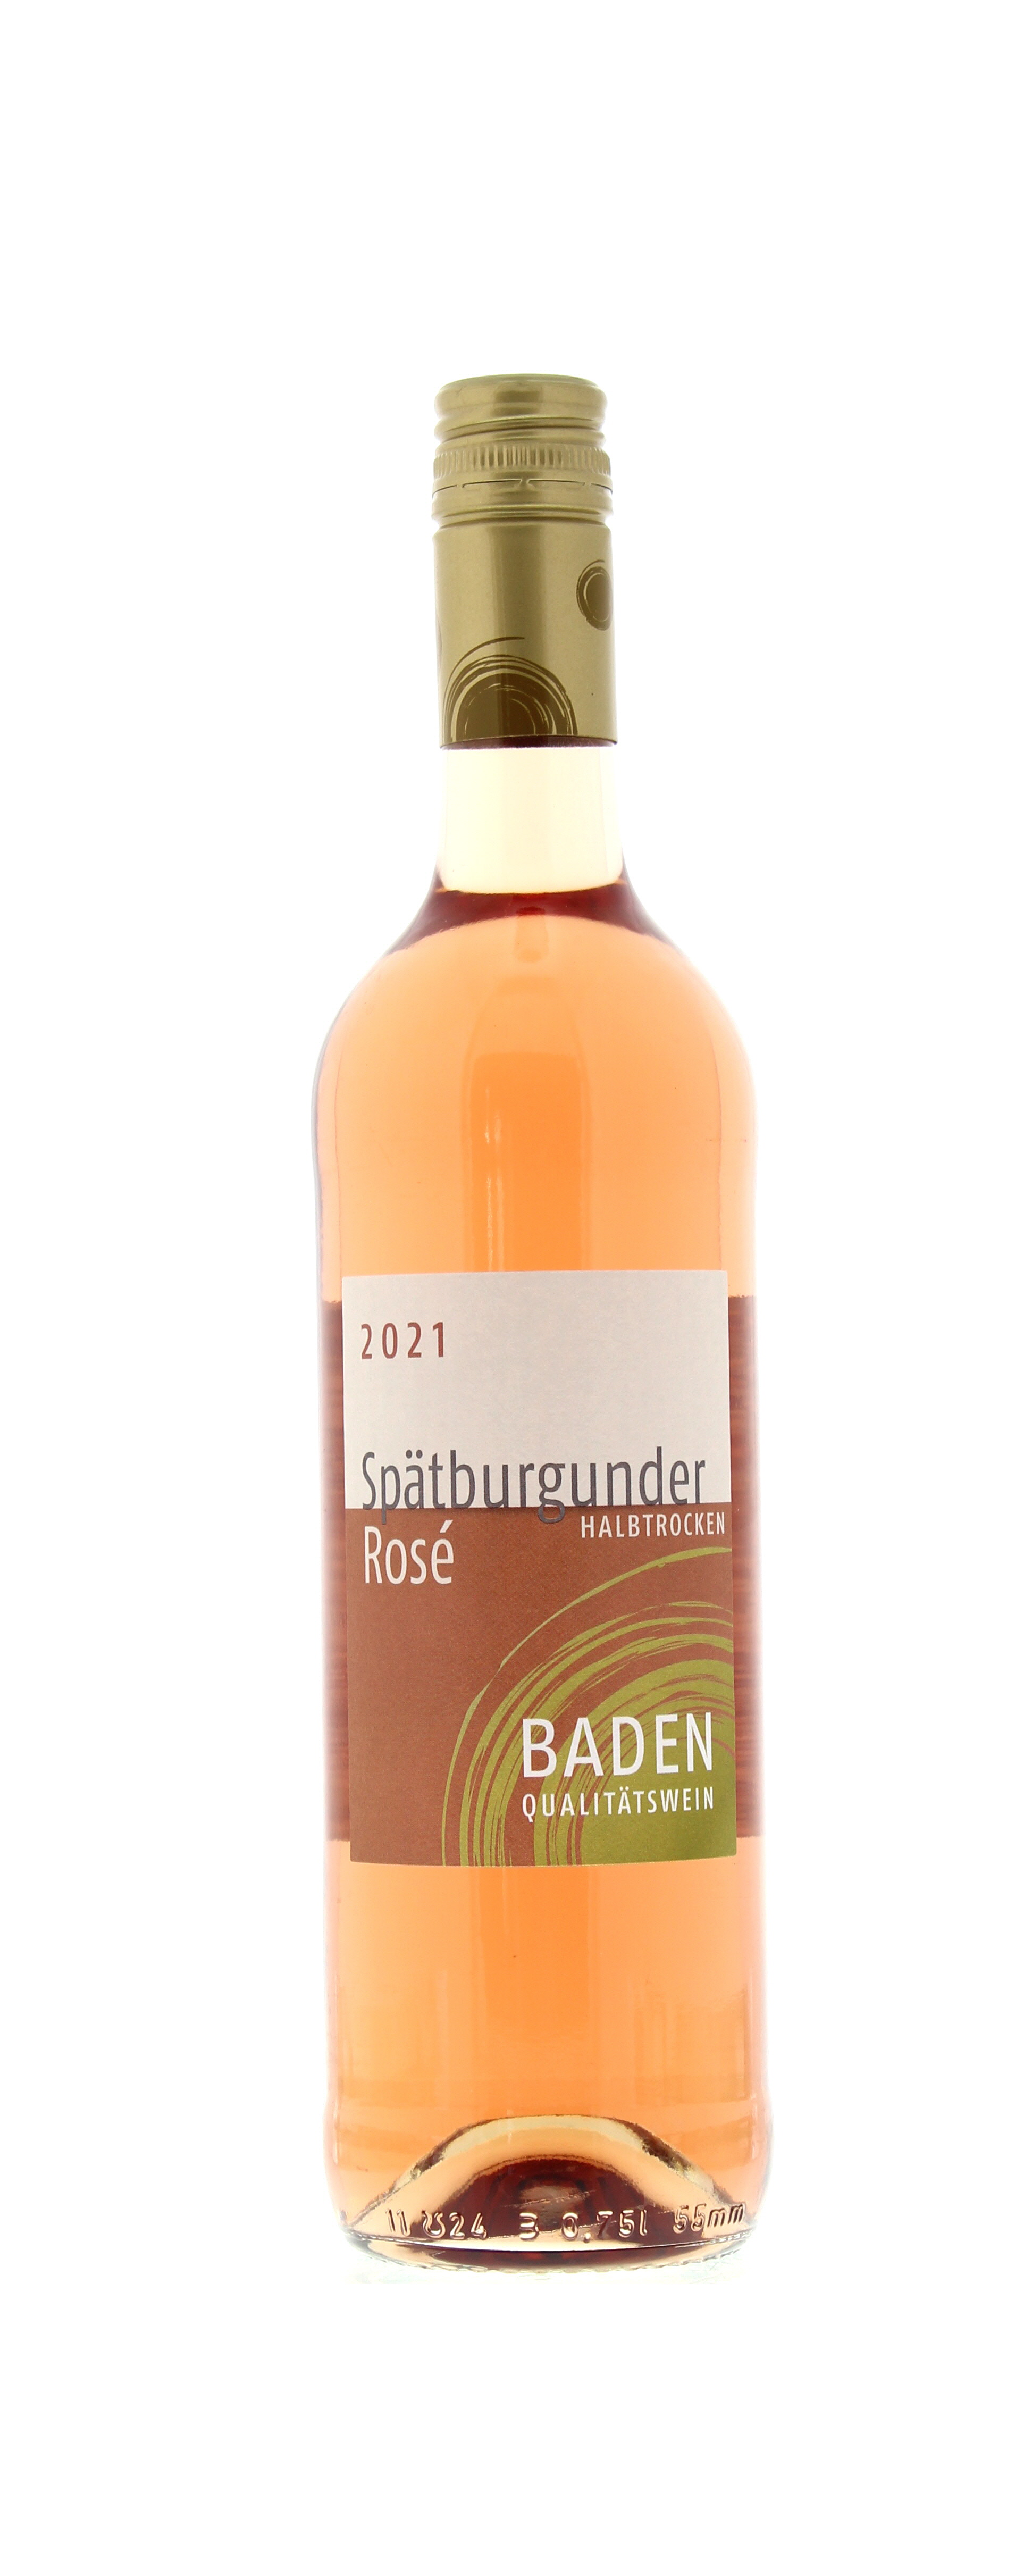 2021 Baden Spätburgunder Rosé Qualitätswein halbtrocken 0,75 l Flasche -  PENNY Mobile Wein-App